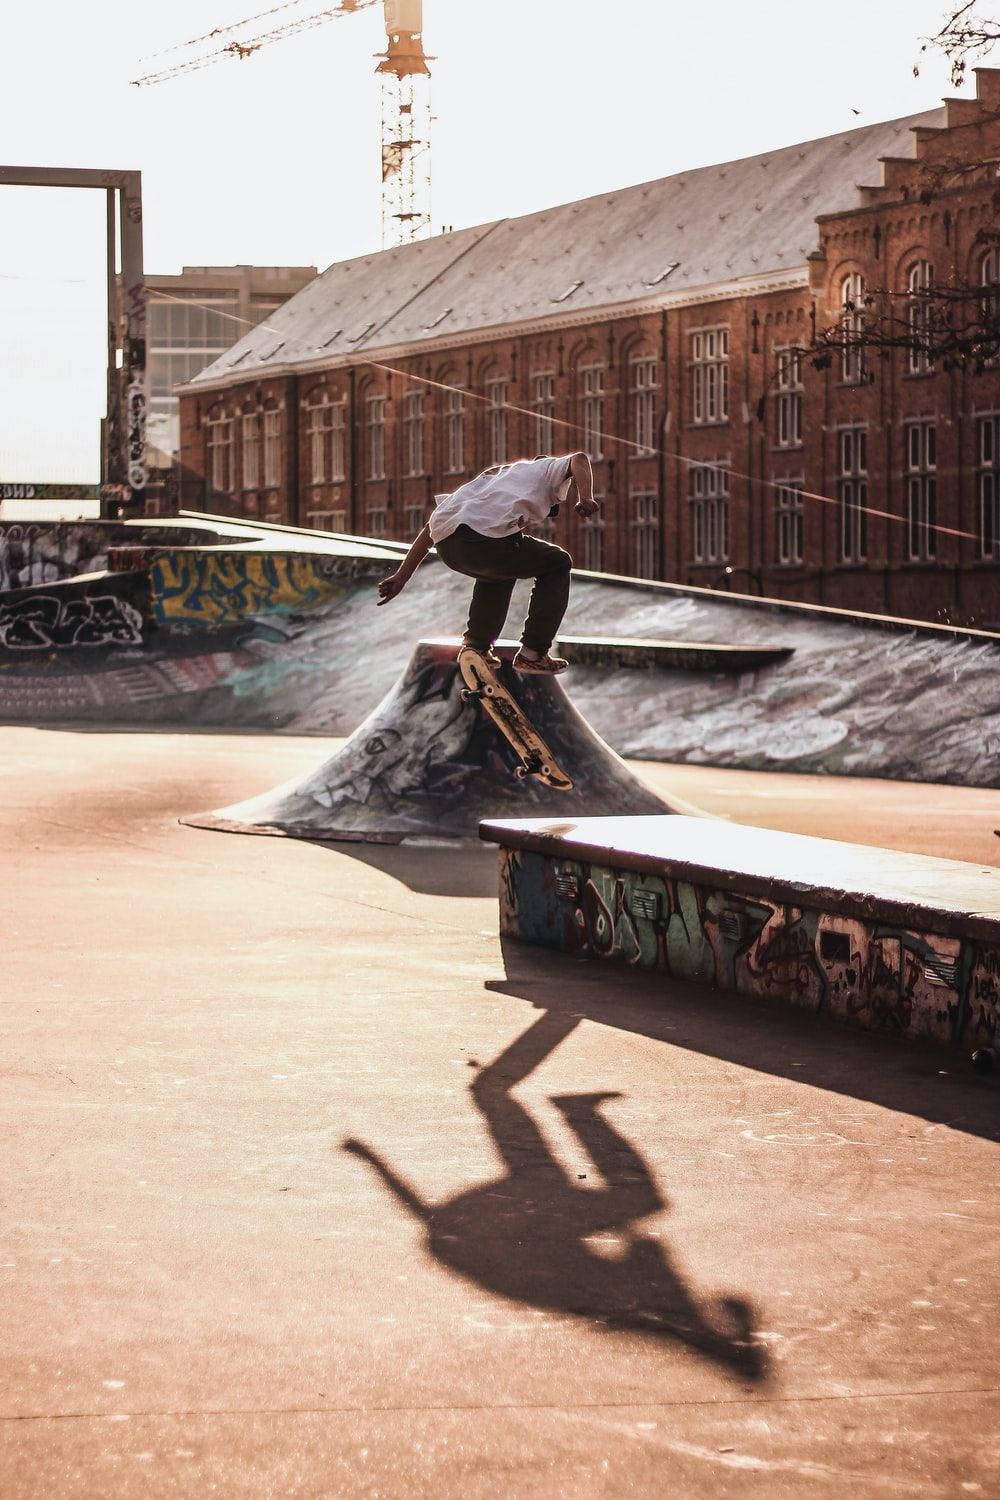 Aesthetic Skateboard Park Background